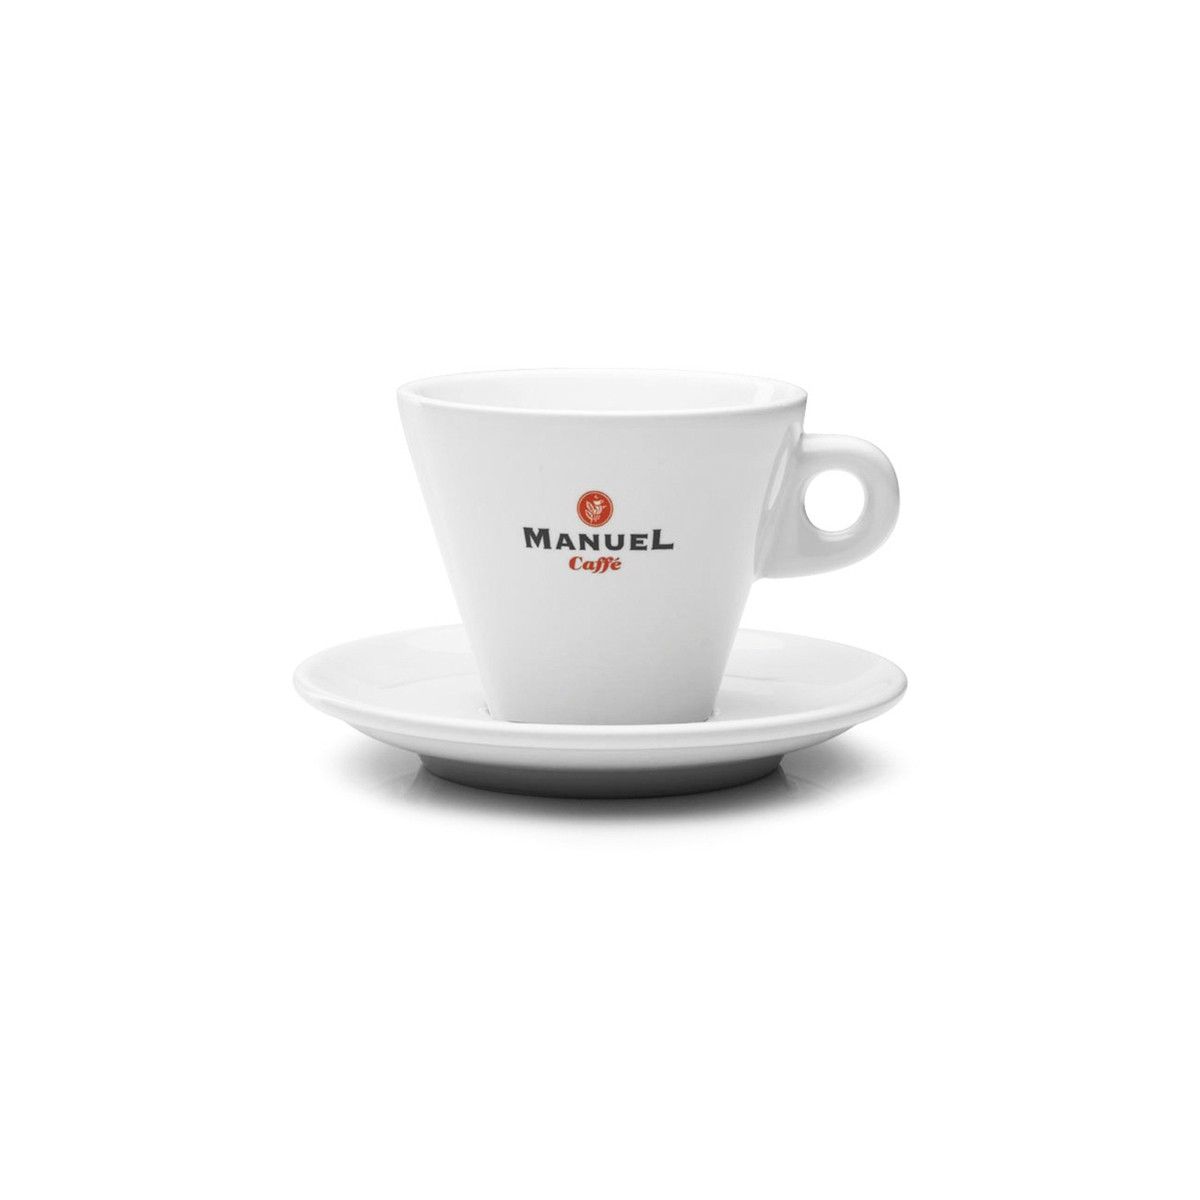 http://manuel.shopstart.hu/Images/Products/5TZMPR03_prestige_latte_1.jpg